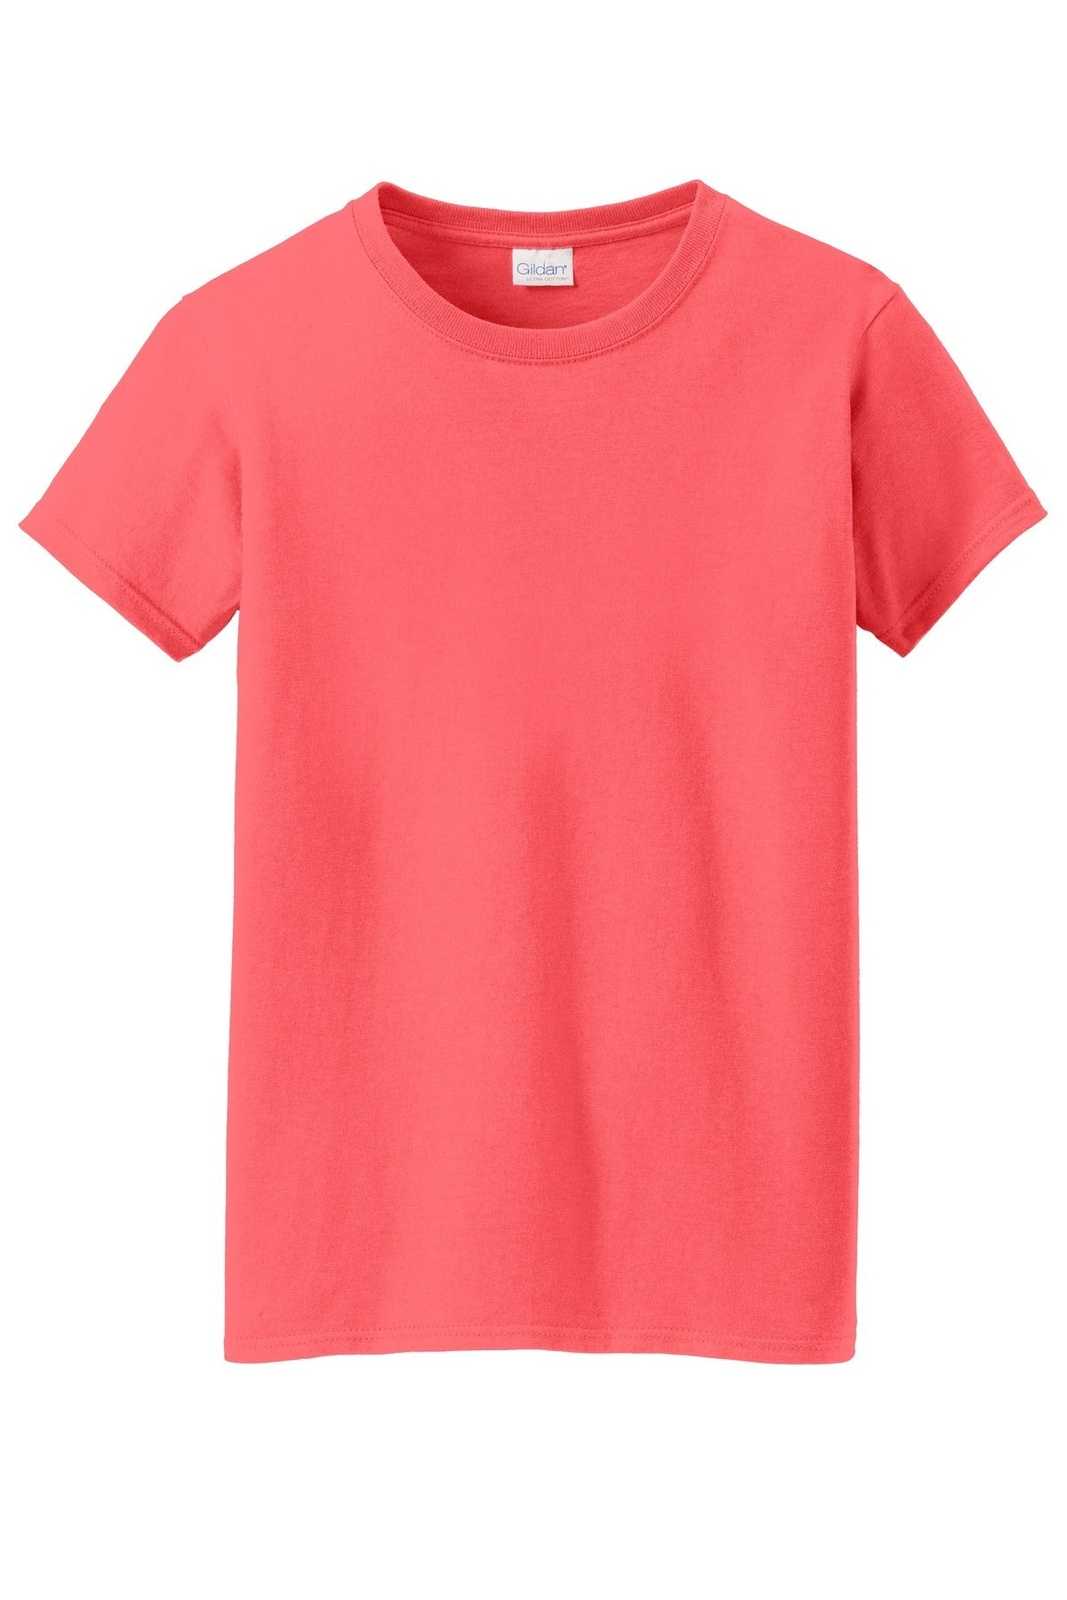 Gildan 5000L Ladies Heavy Cotton 100% Cotton T-Shirt - Coral Silk - HIT a Double